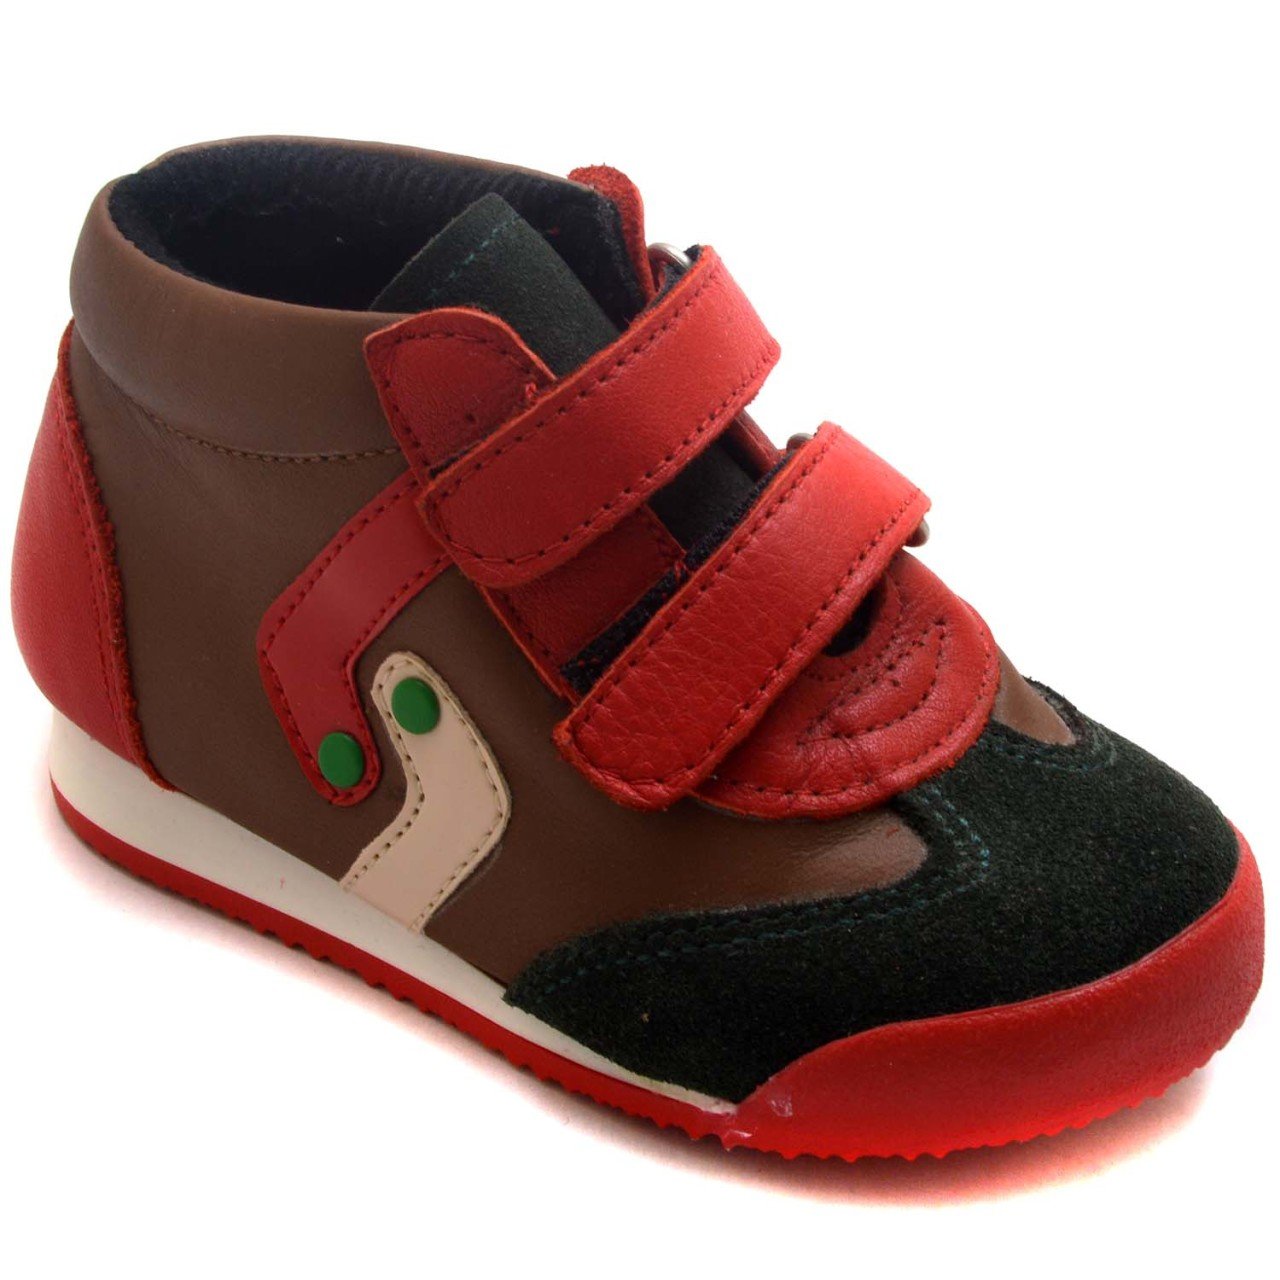 NM-19 Bebe Spor Model Kışlık Ayakkabı - Kahverengi (Deri)